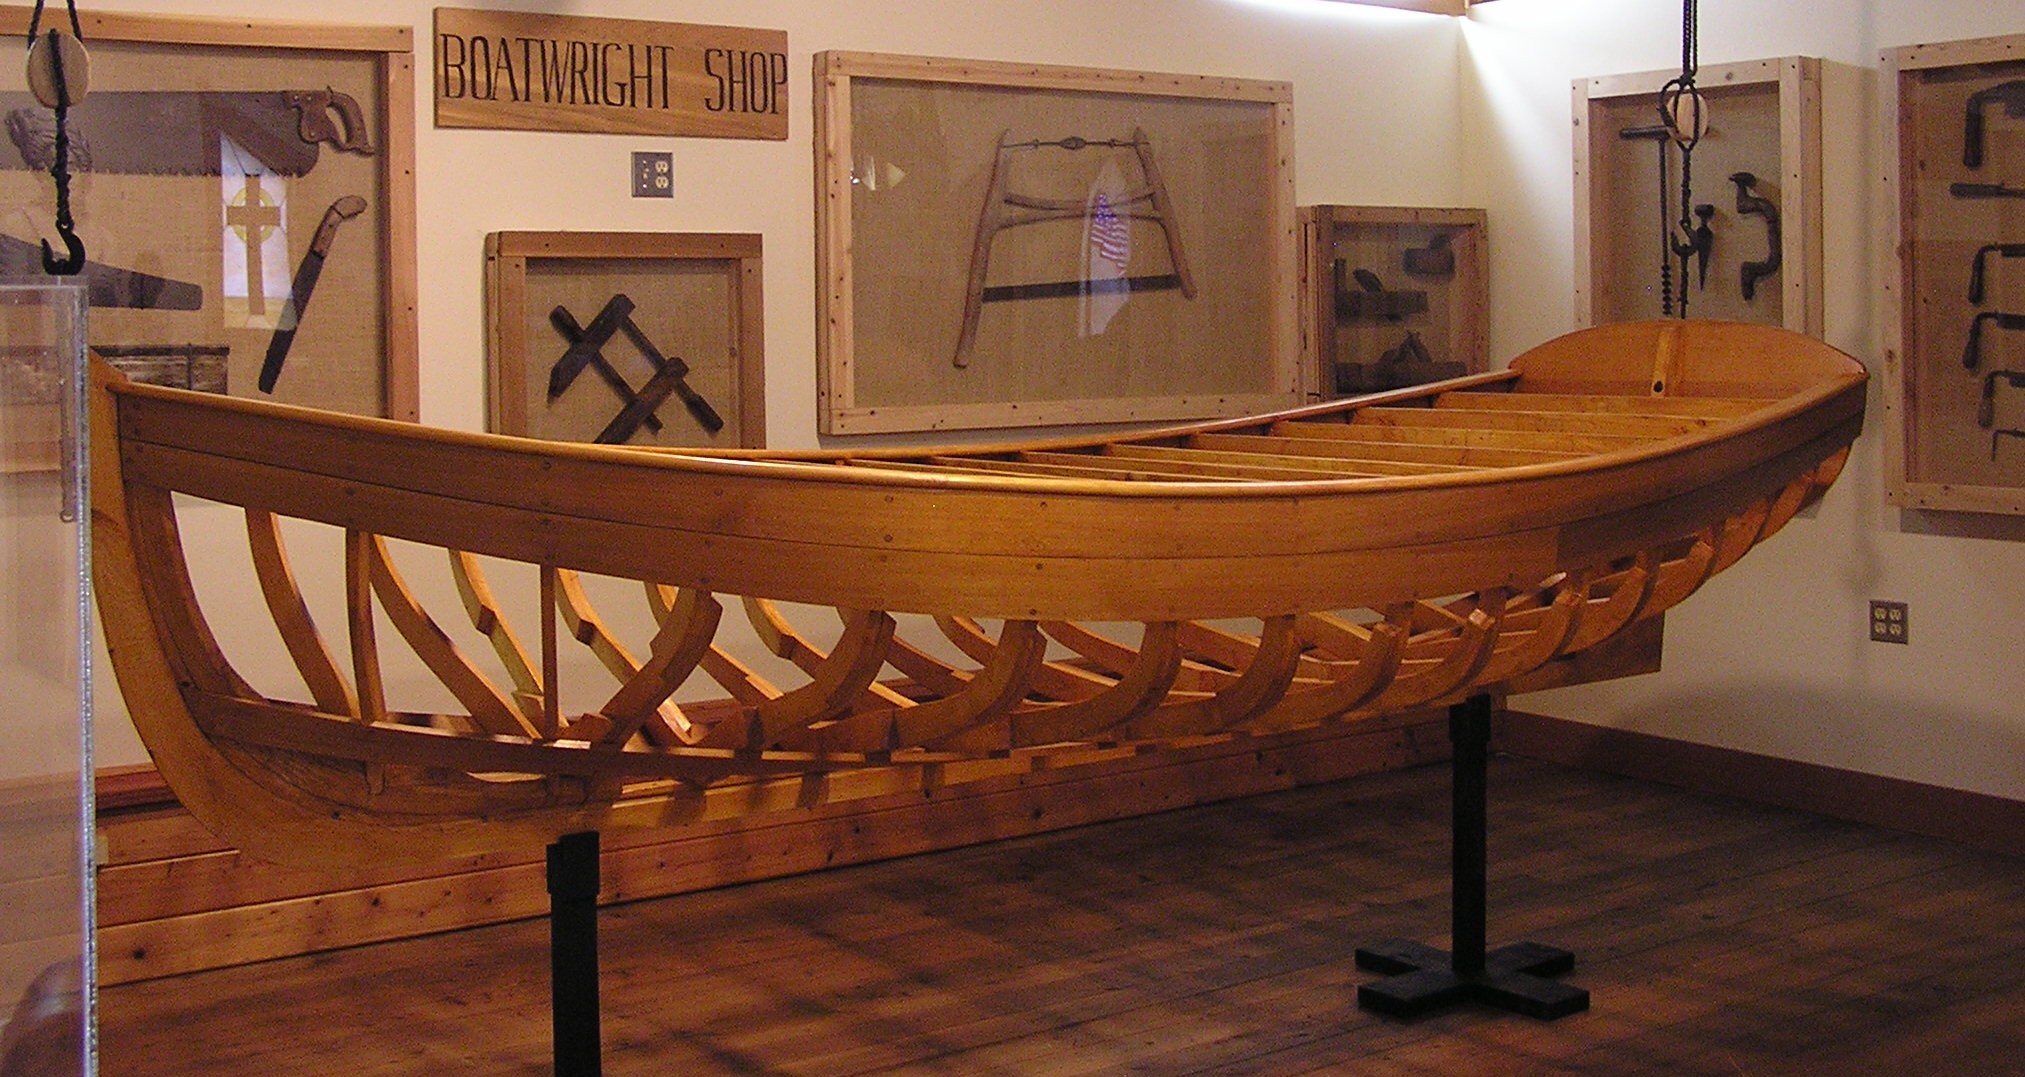 (c) Garibaldimuseum.com